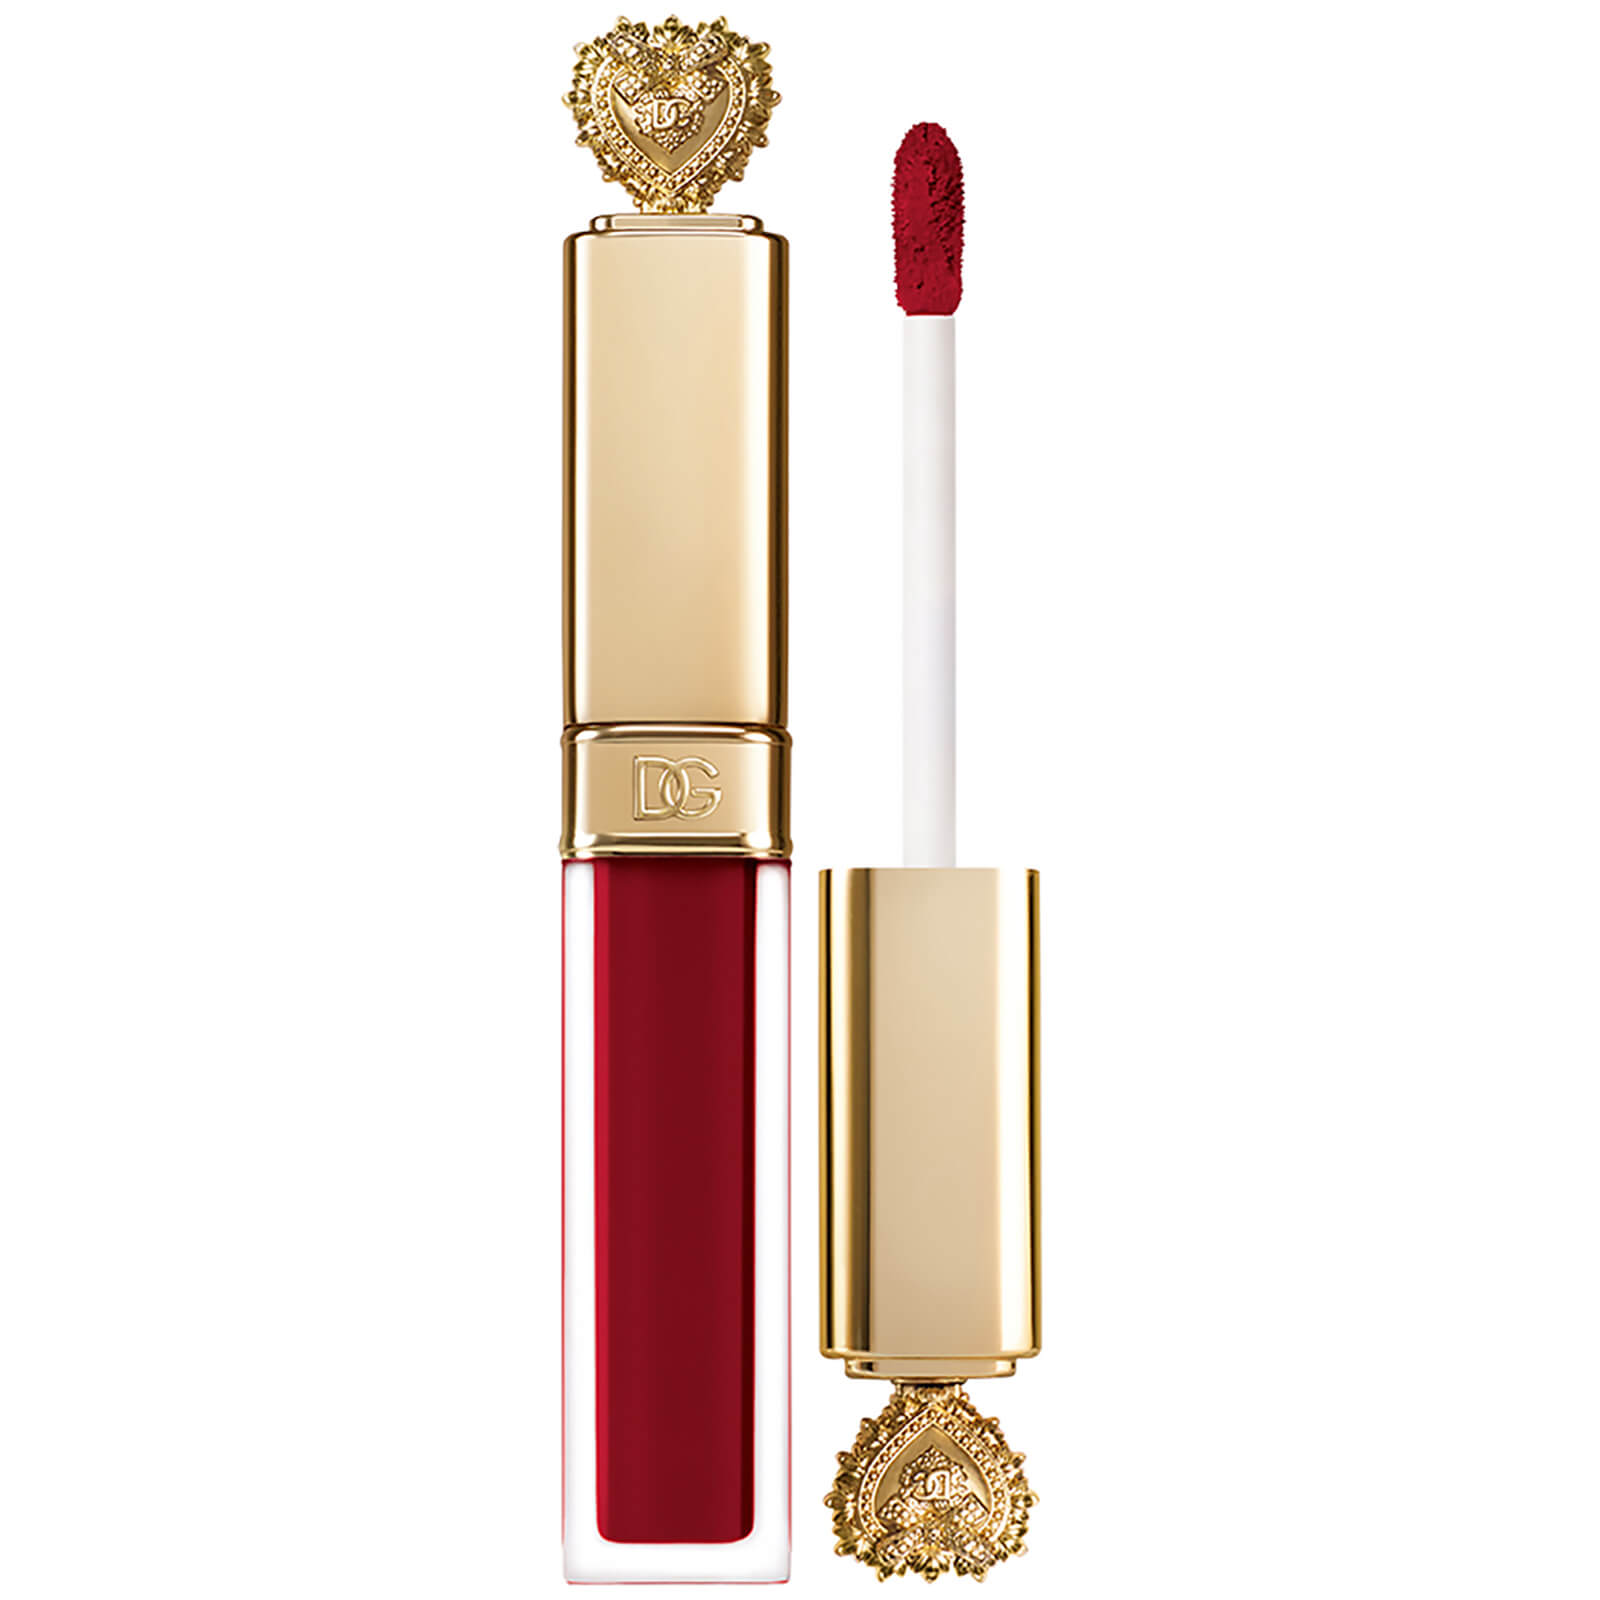 Dolce&Gabbana Lip Lac Devotion 5ml (Various Shades) - Audacia 410